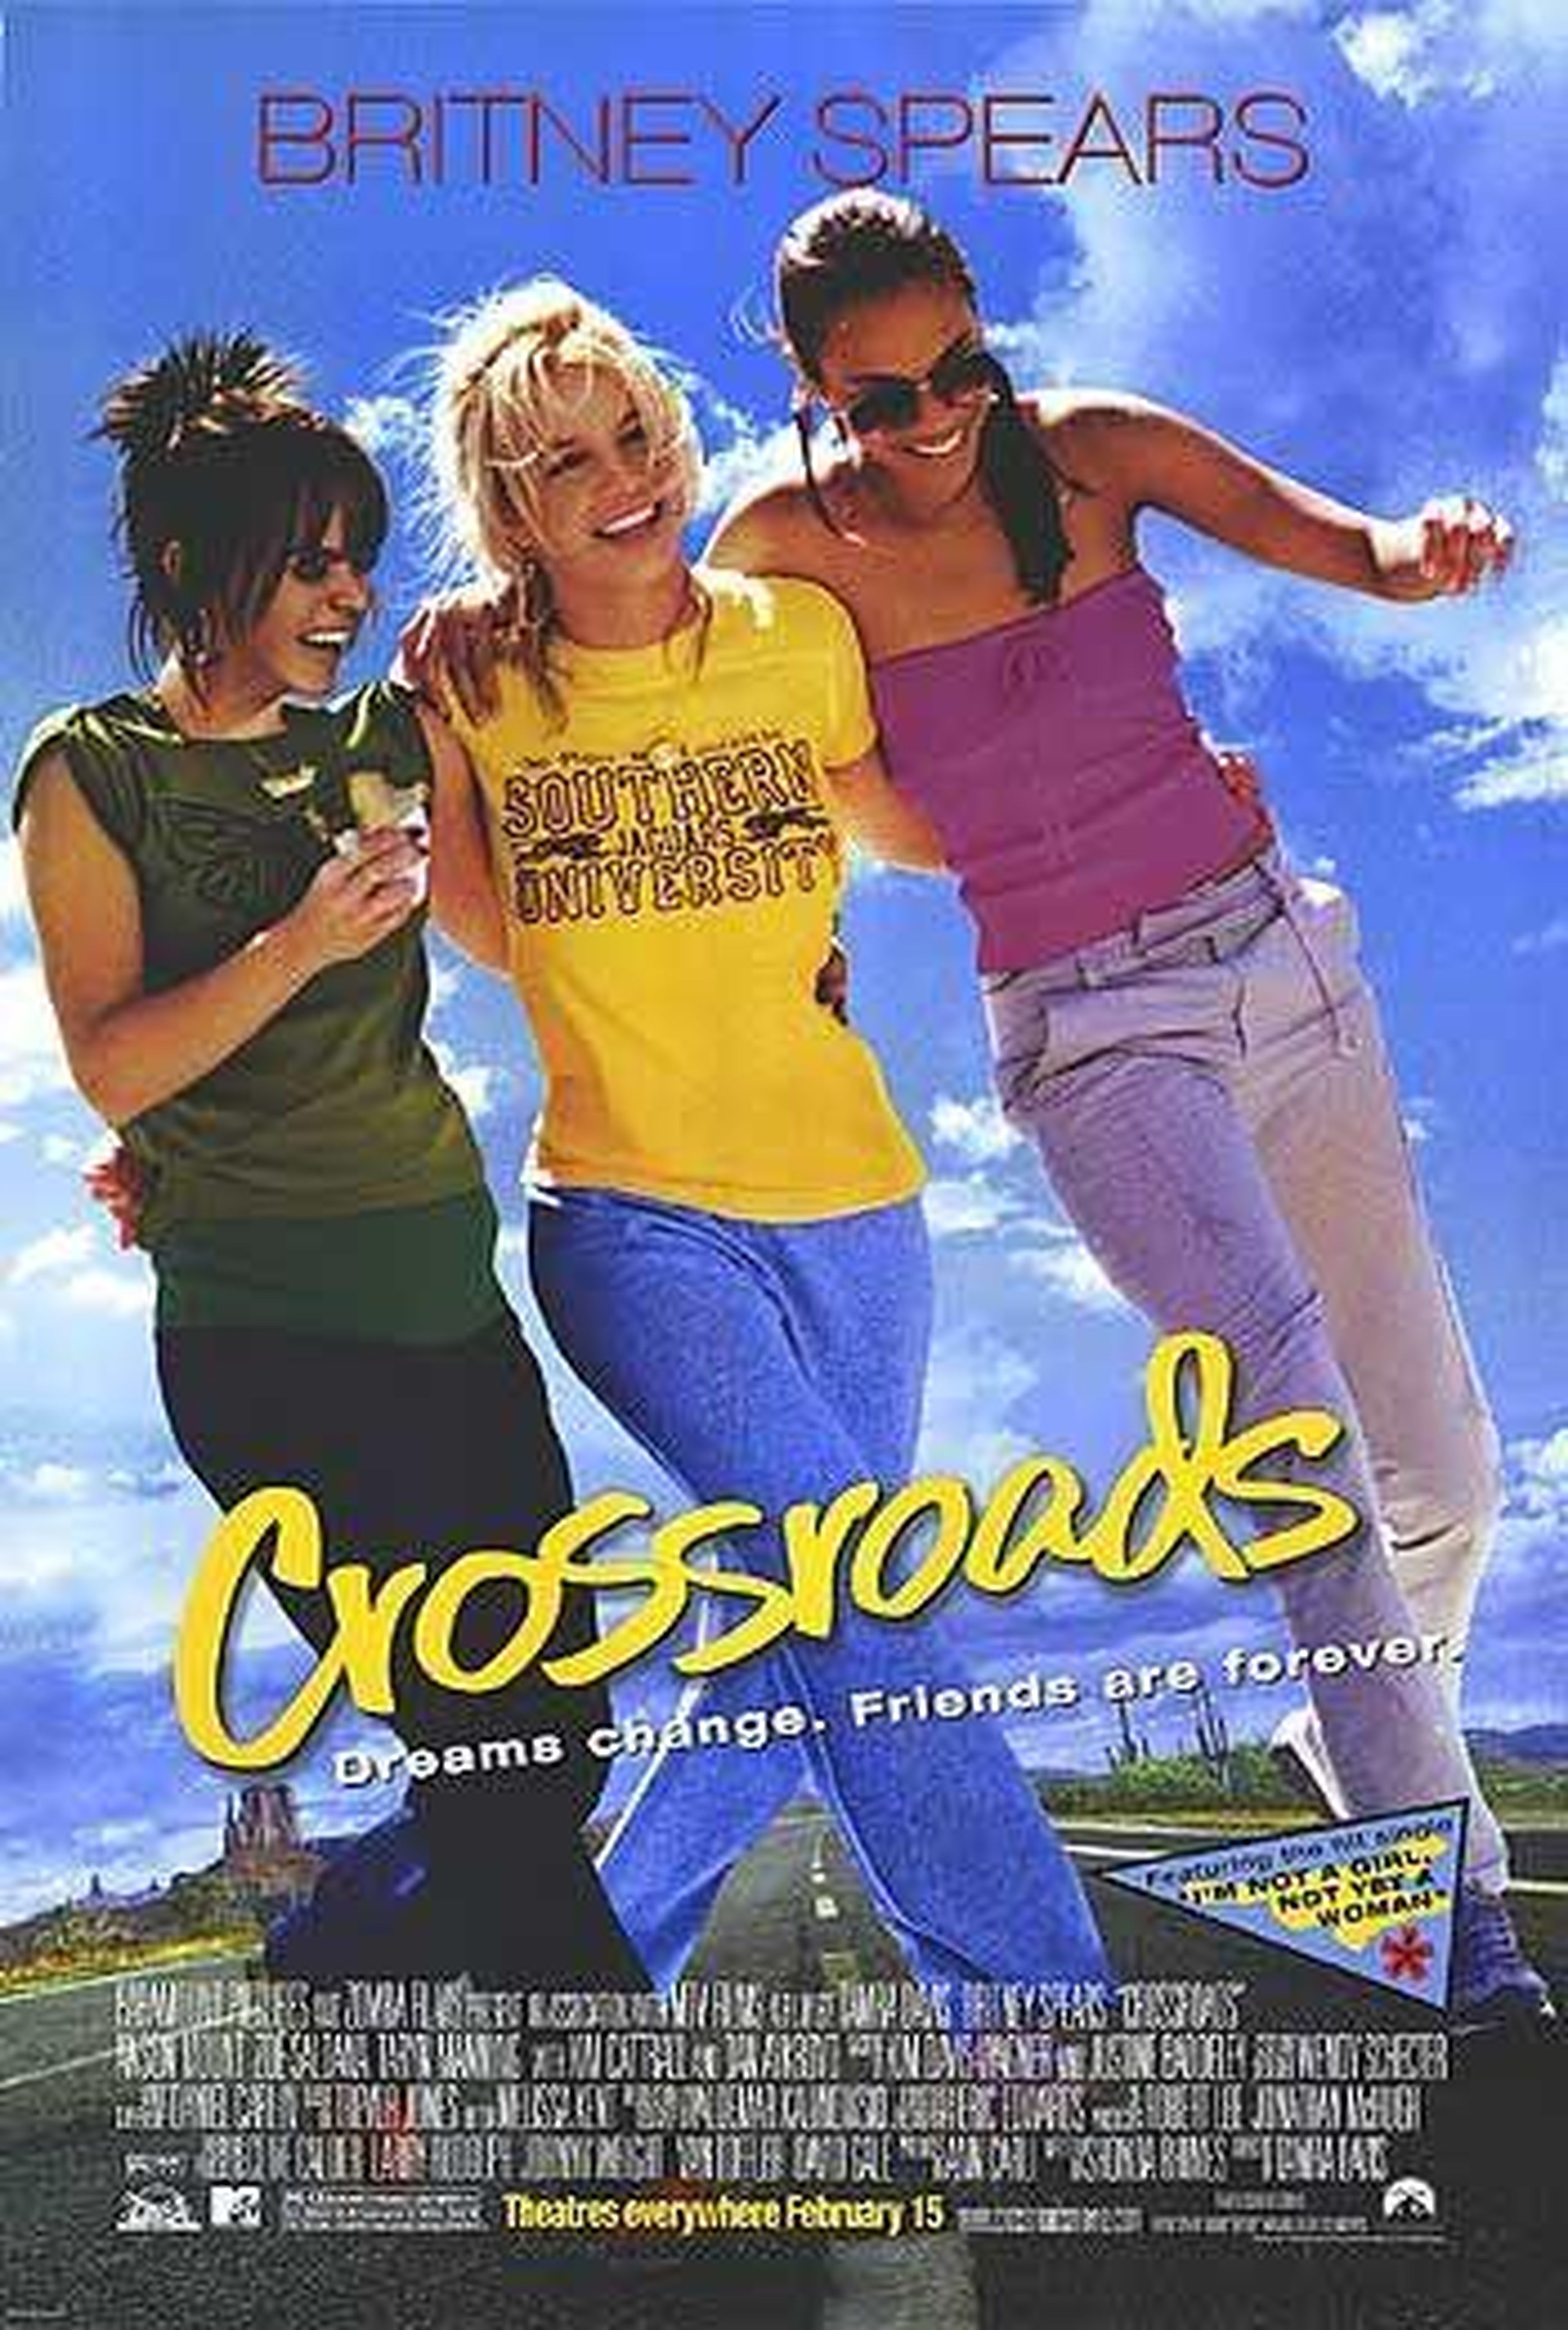 Crossroads Britney Spears